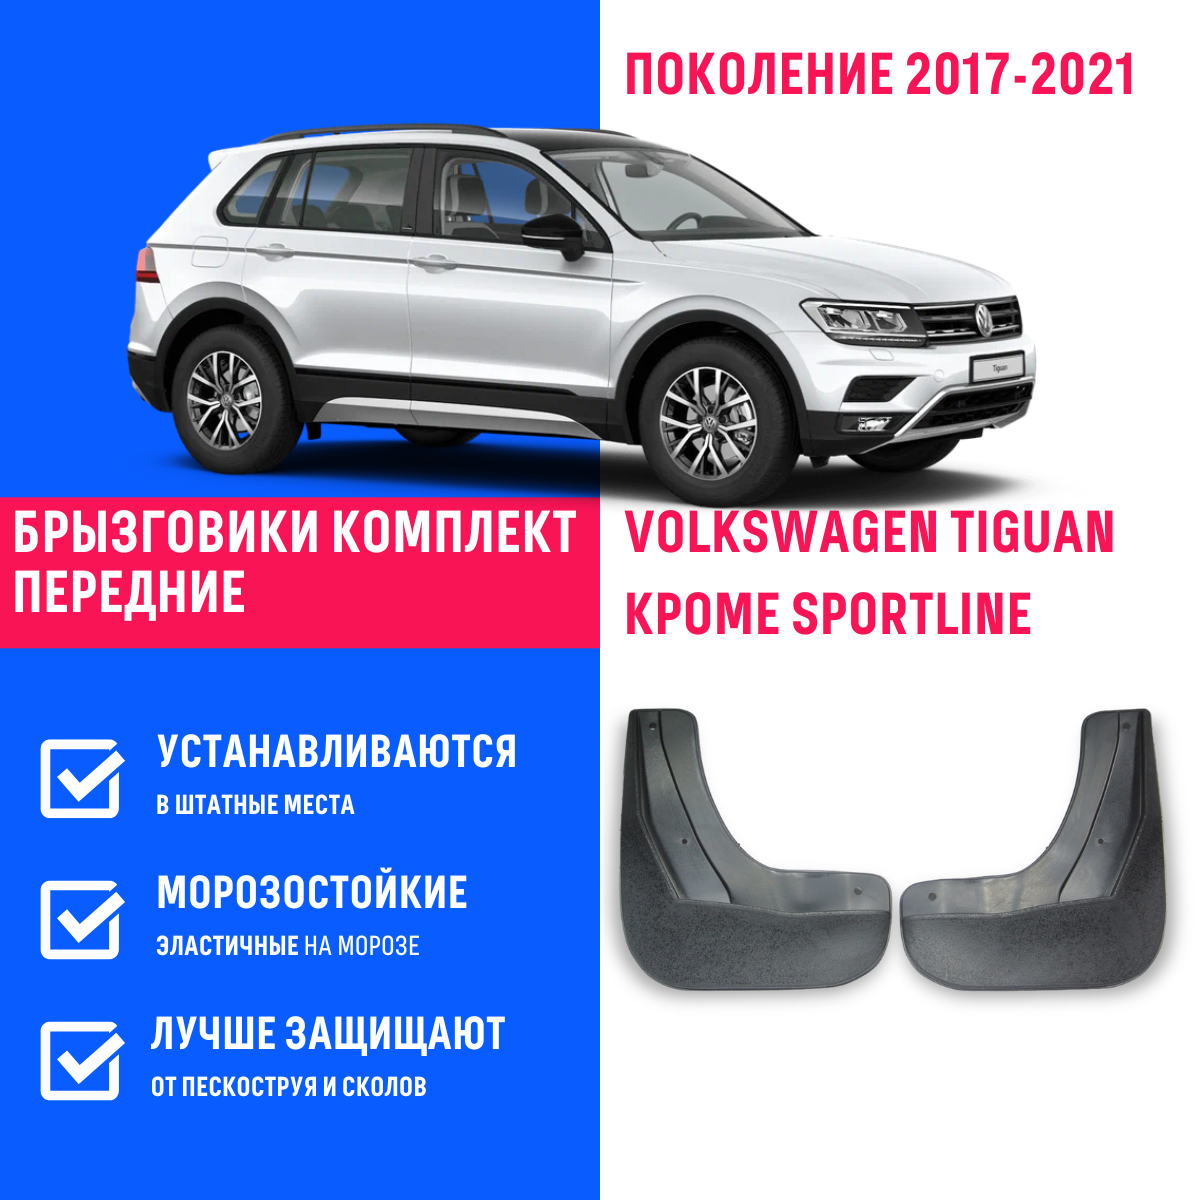 Брызговики передние Volkswagen Tiguan, Фольксваген Тигуан поколение 2017-2021